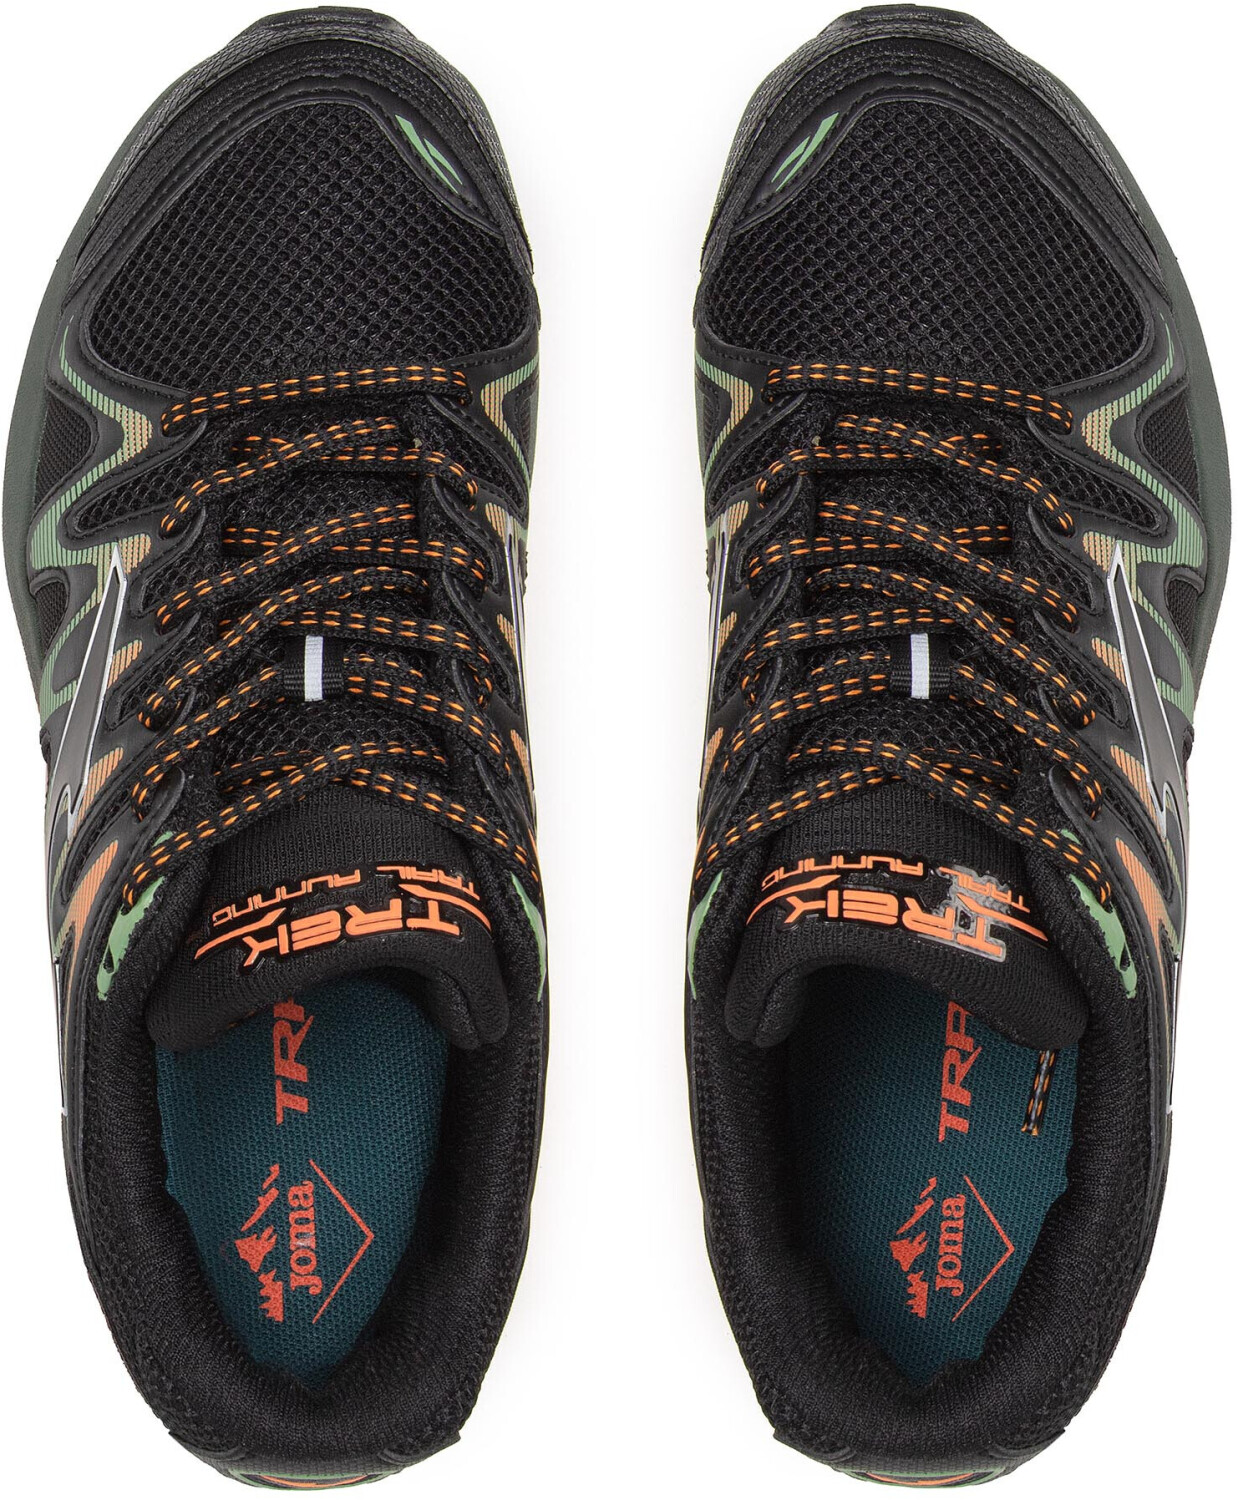 Zapatillas deportivas sneaker de hombre JOMA trek men 2231 color naranja